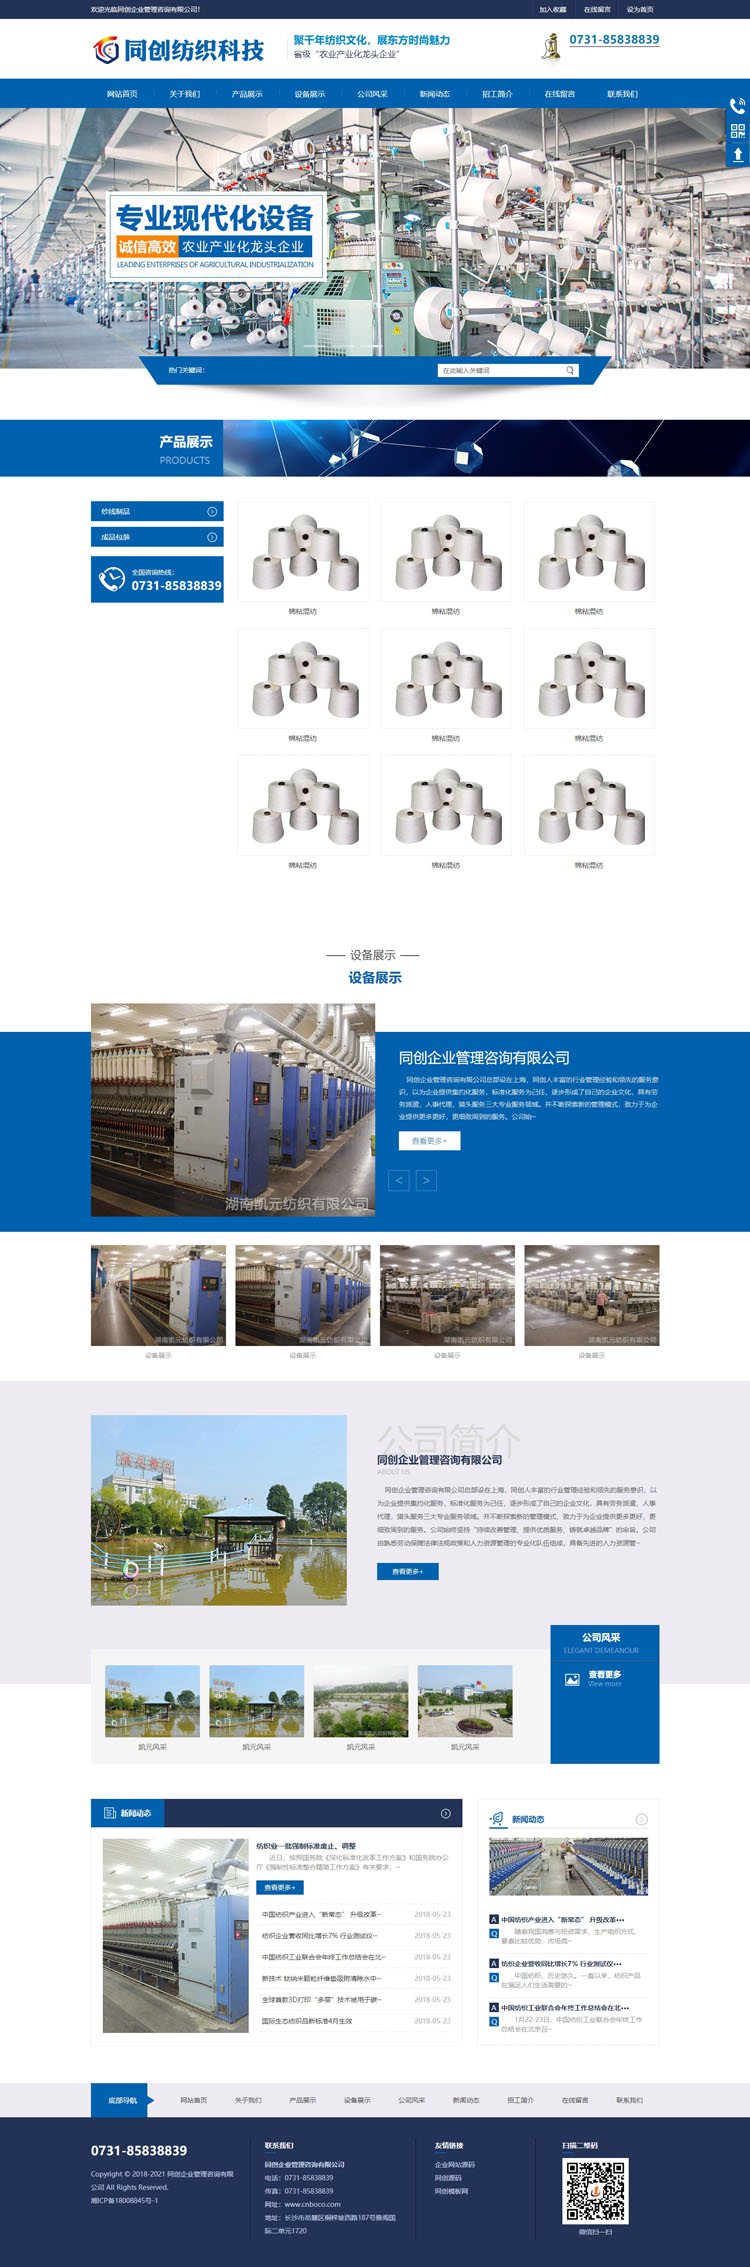 纺织工业设备网站制作源码程序-XX244-2